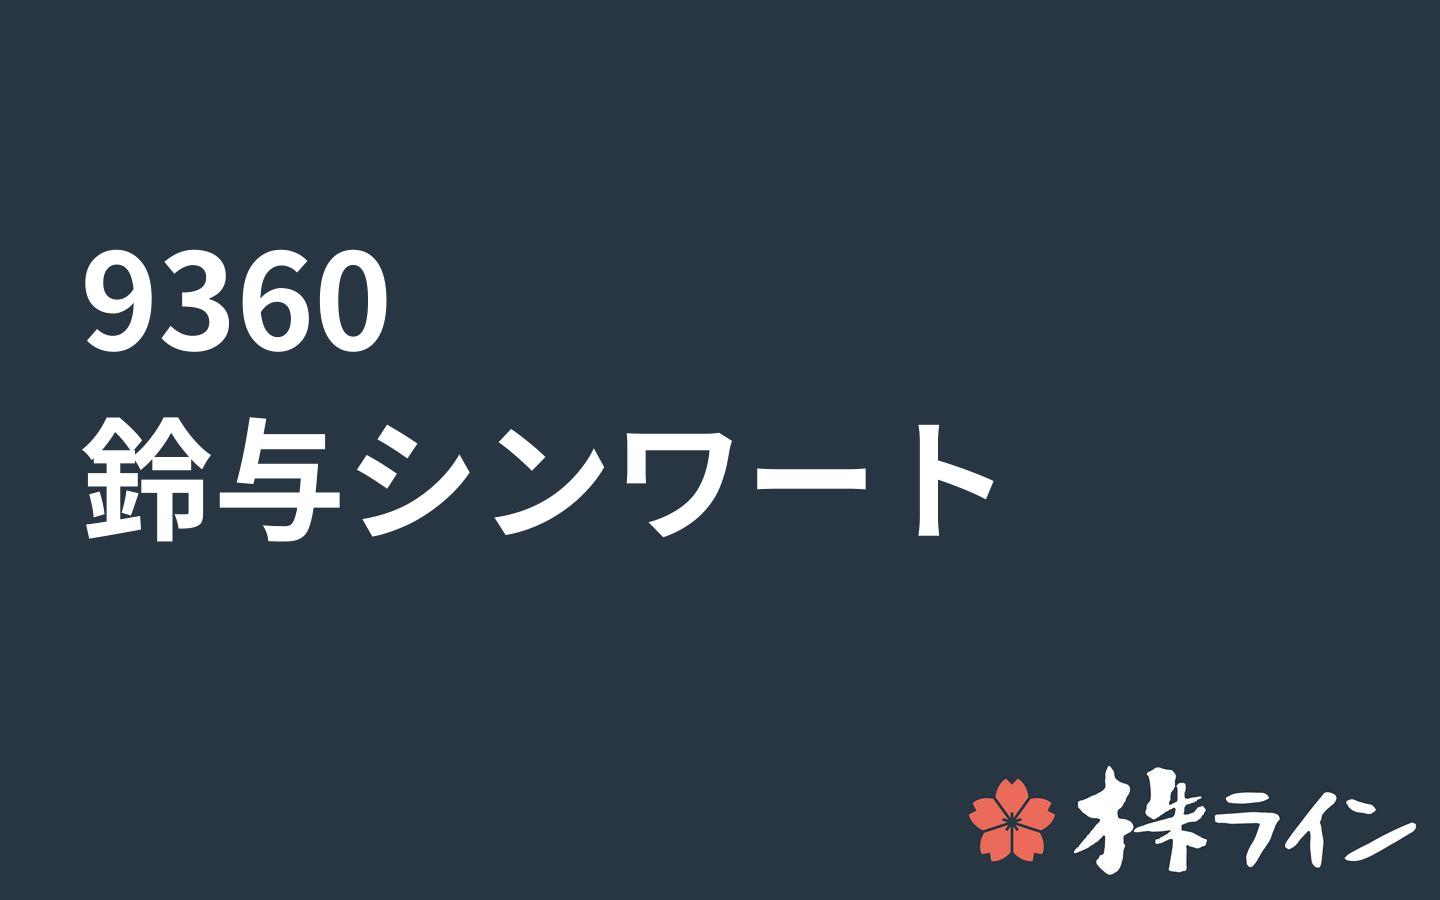 鈴与シンワート 9360 株価予想 ツイッター投資家のリアルタイム売買 株ライン